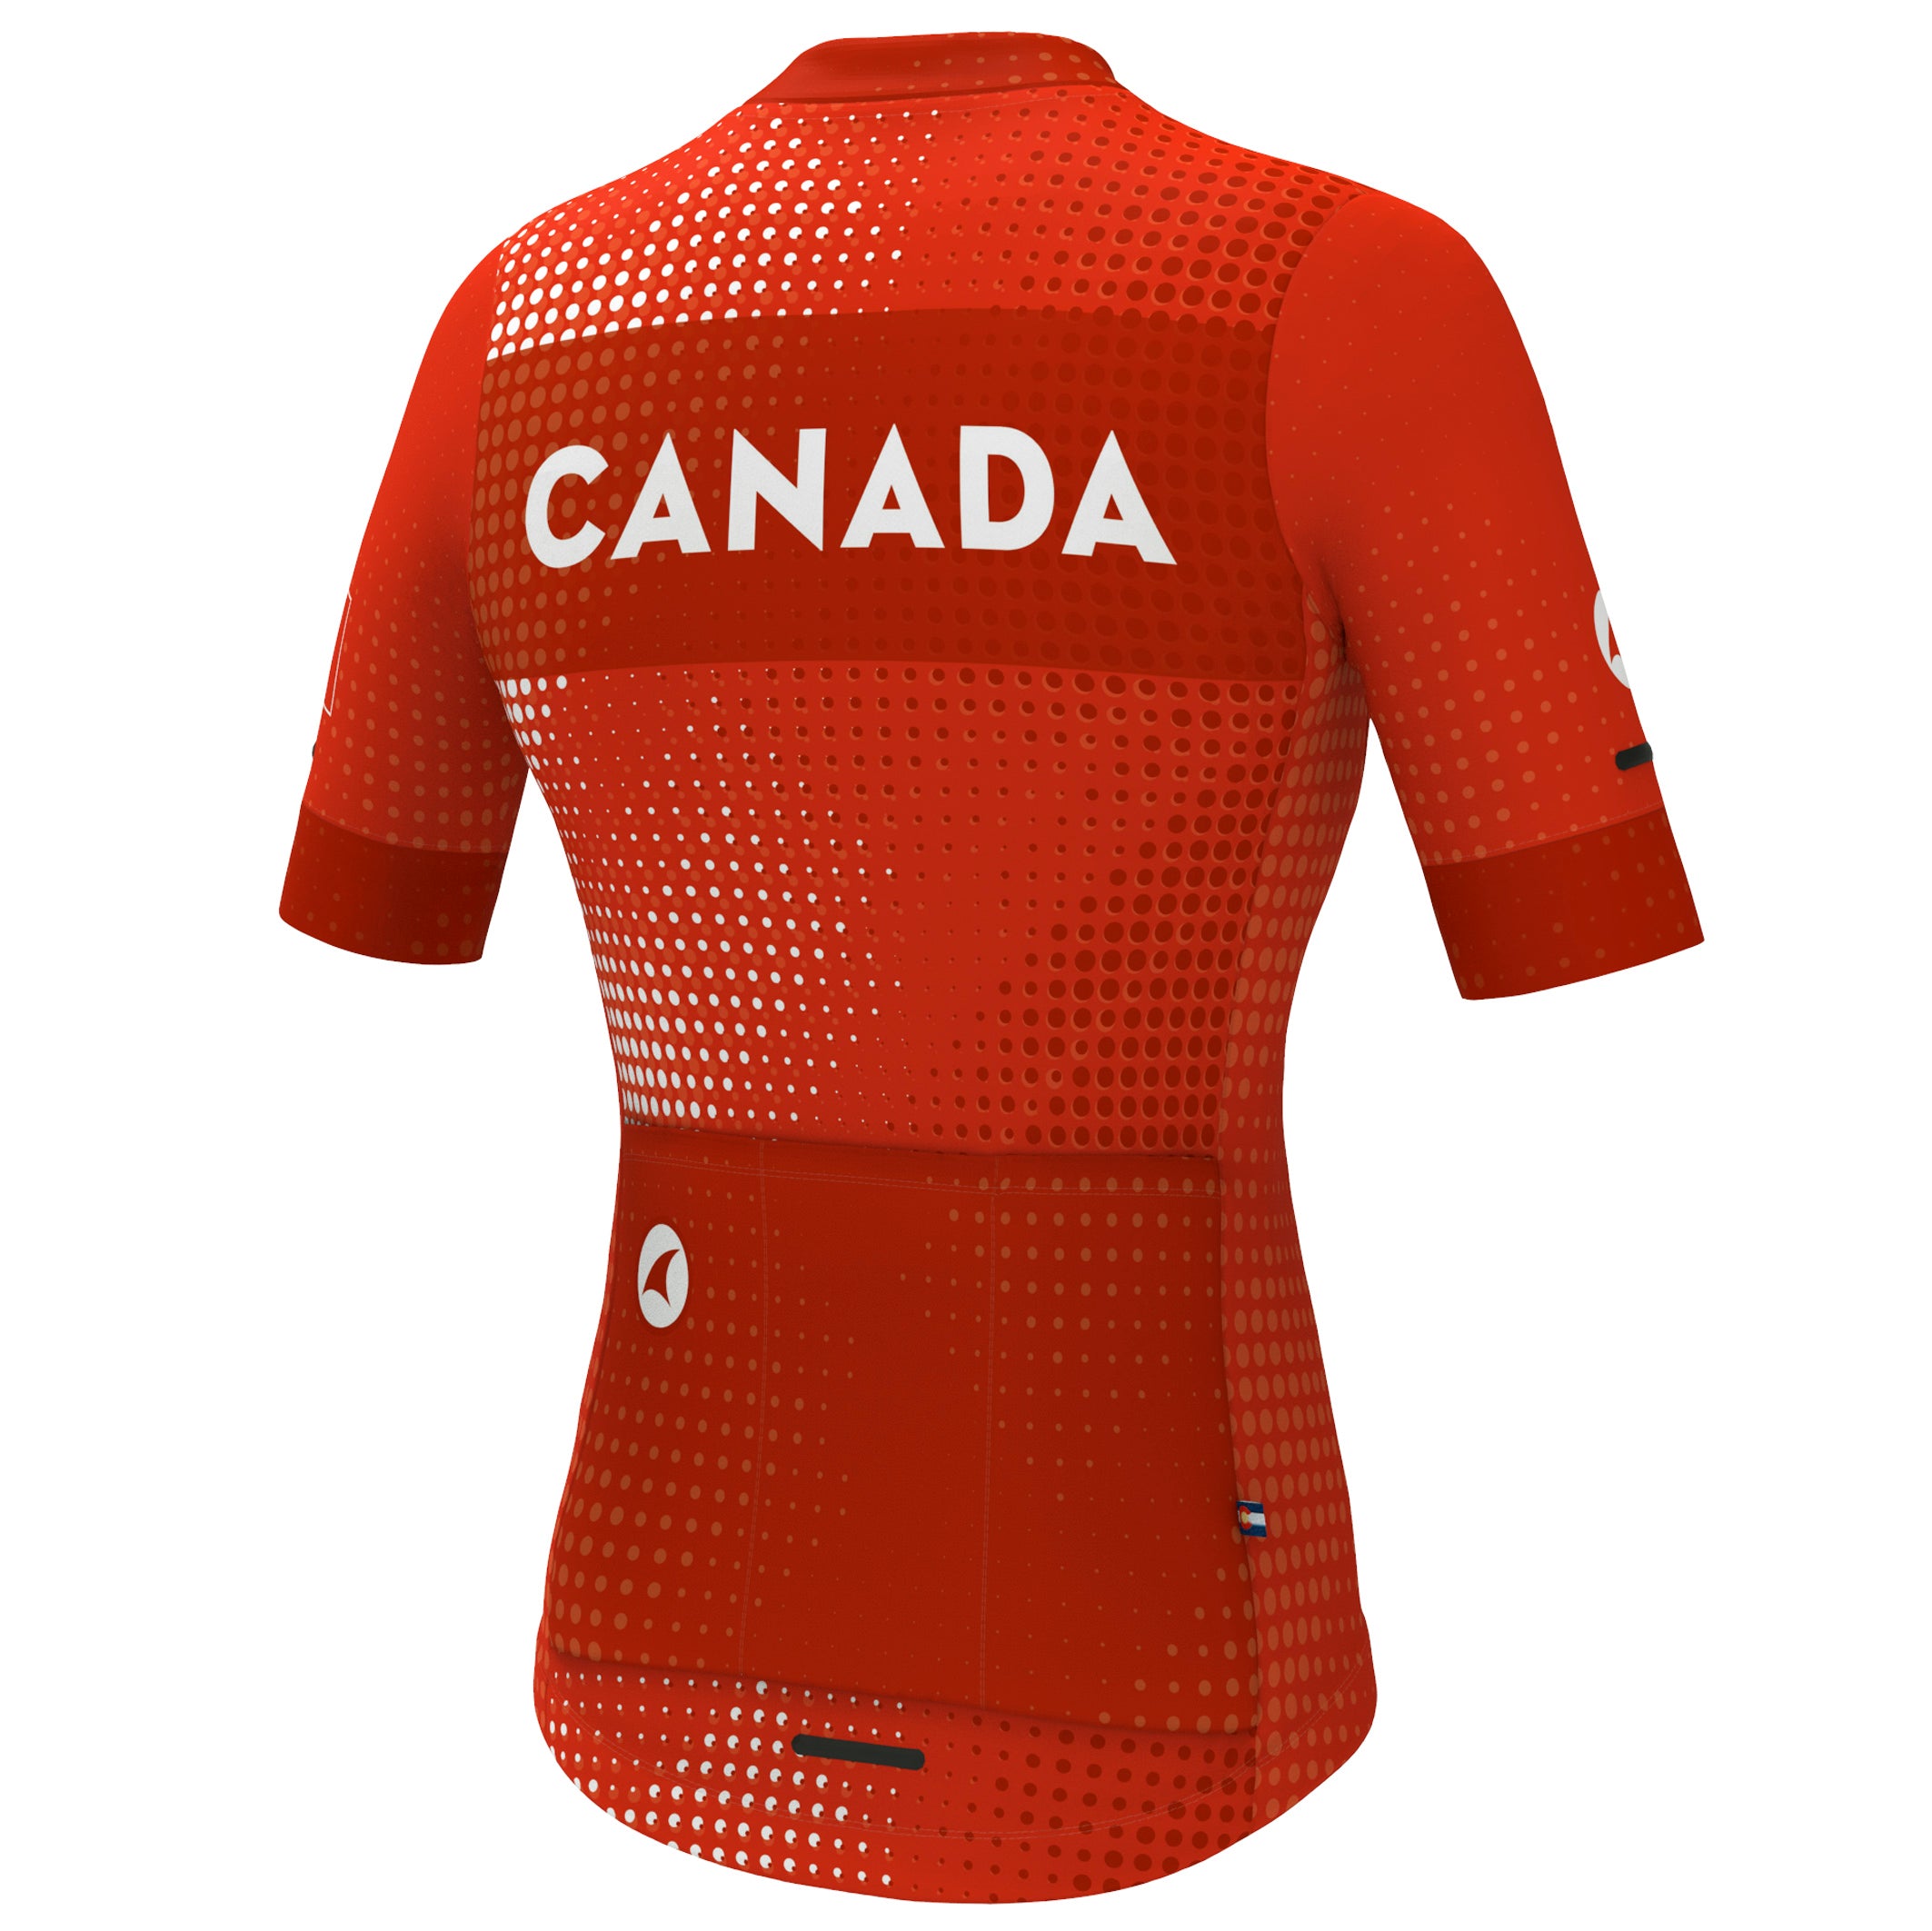 women's cycling clothing canada